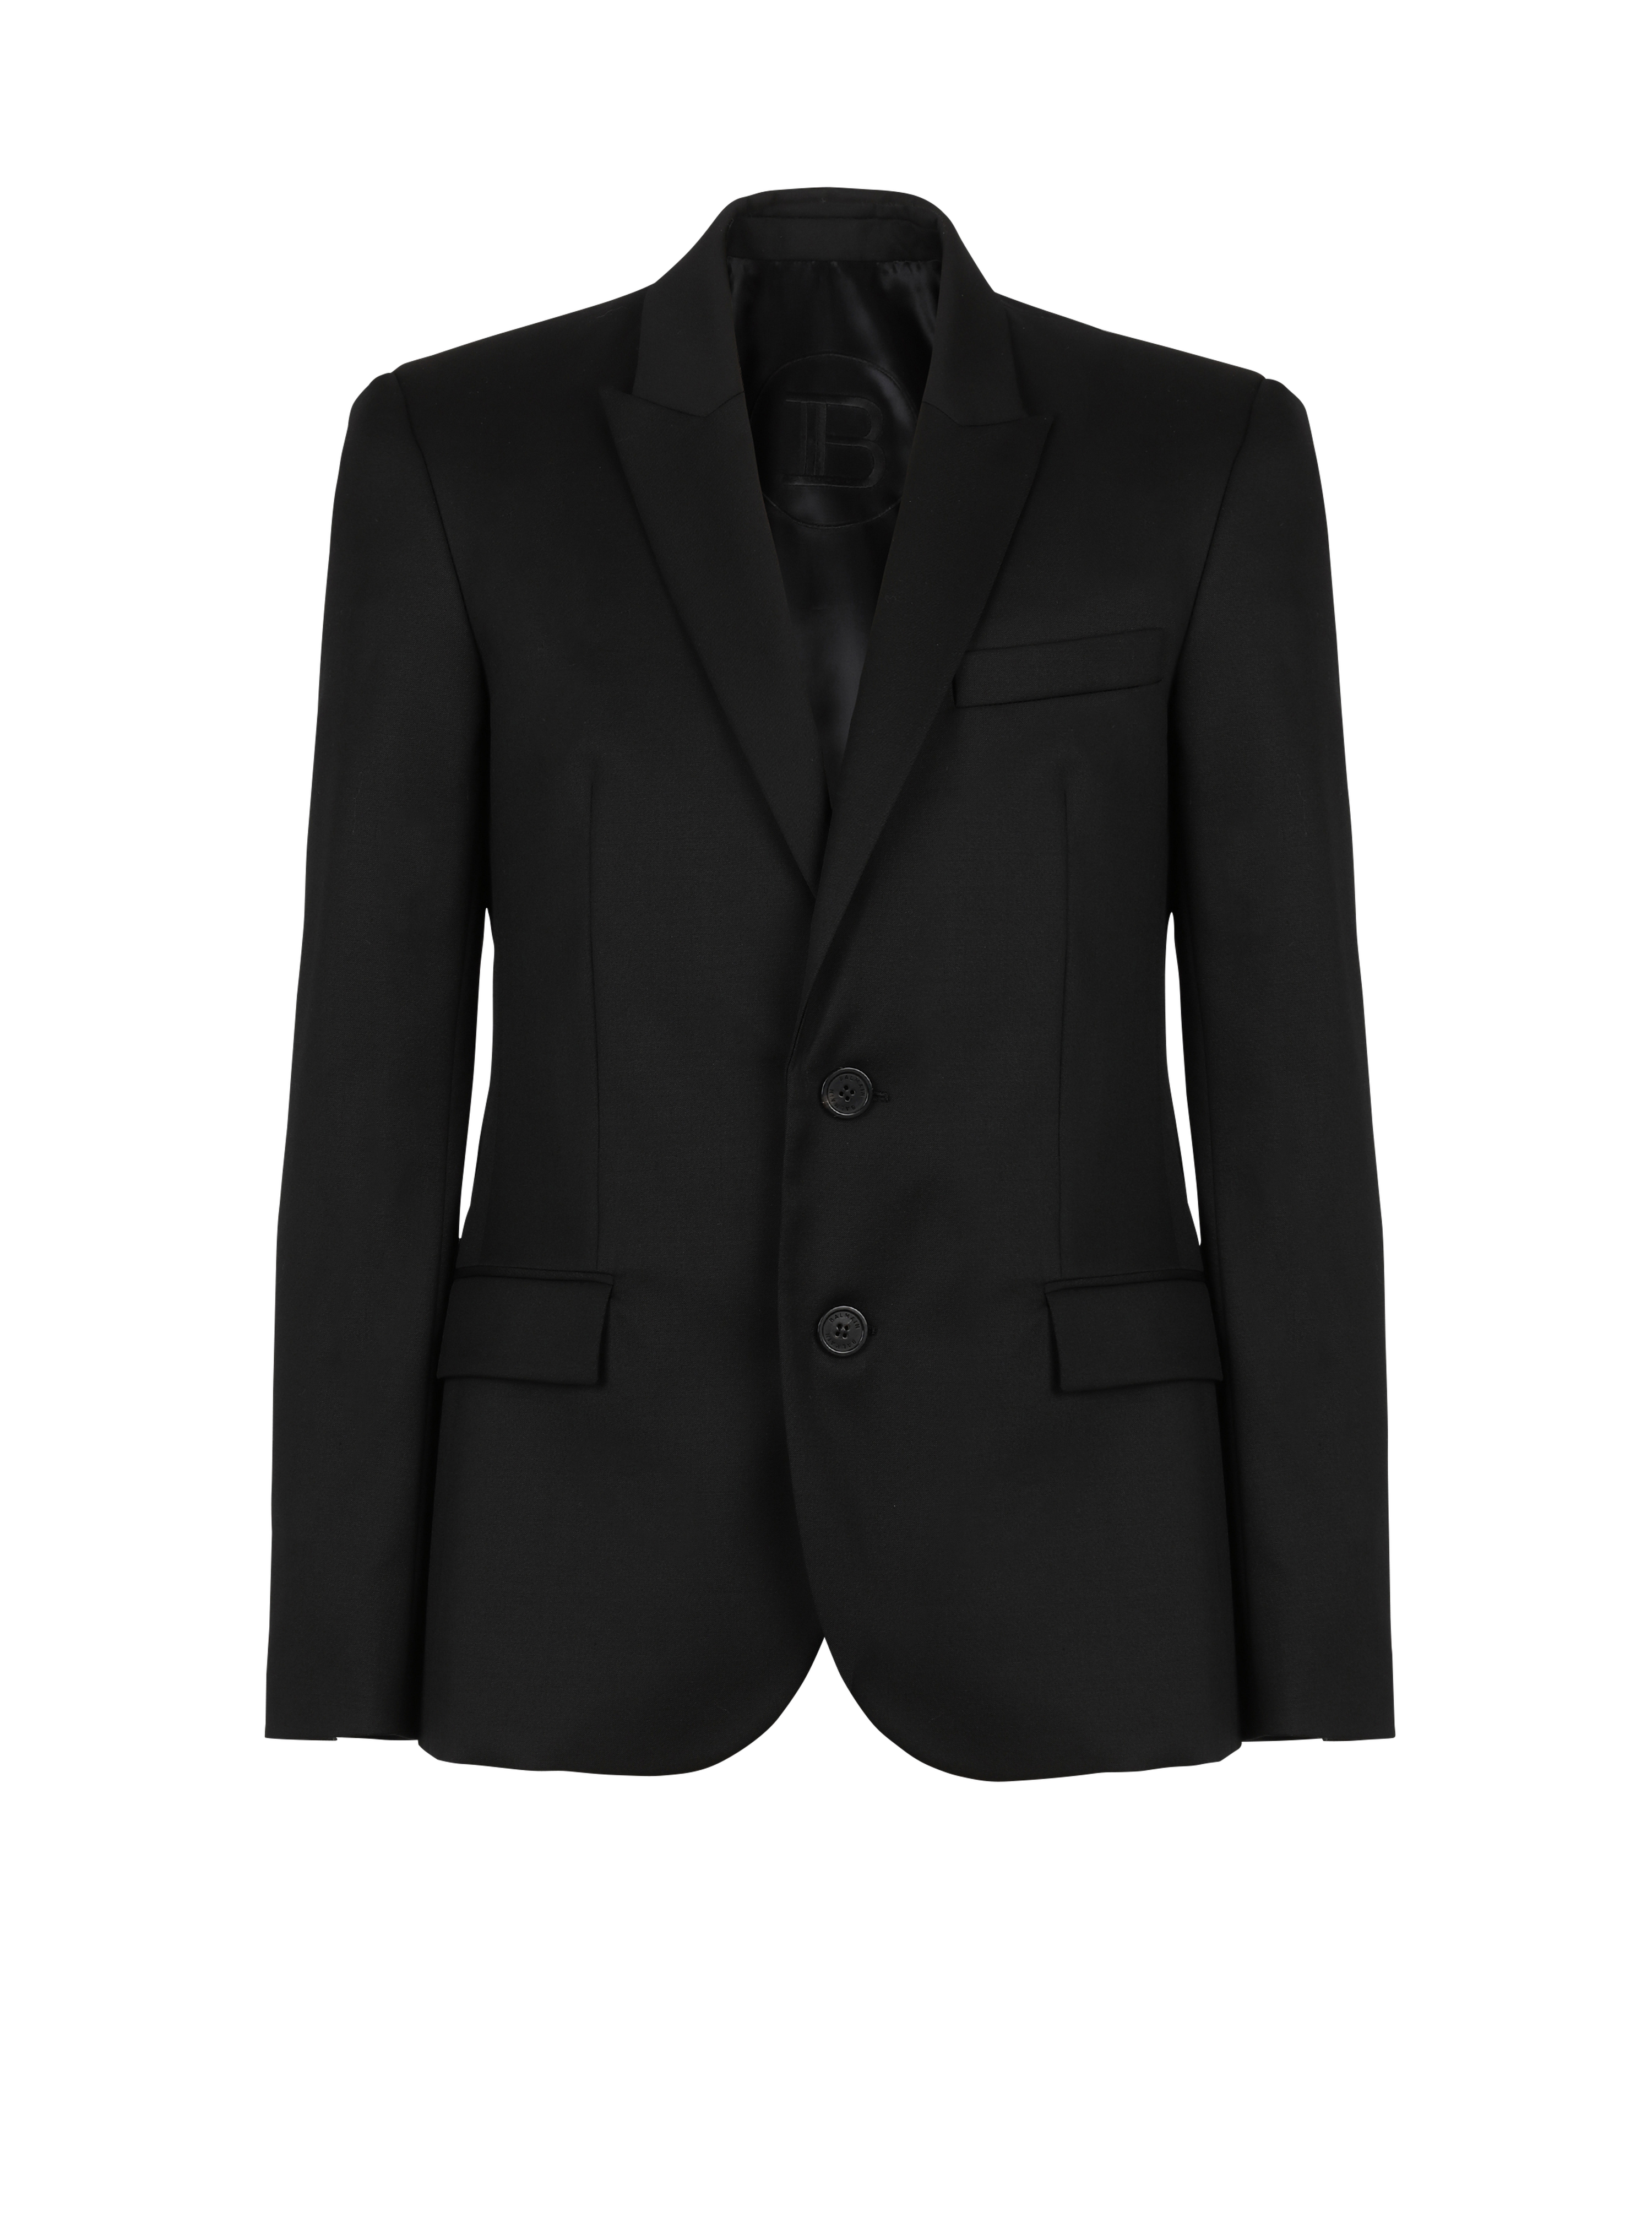 Two-button wool blazer, black